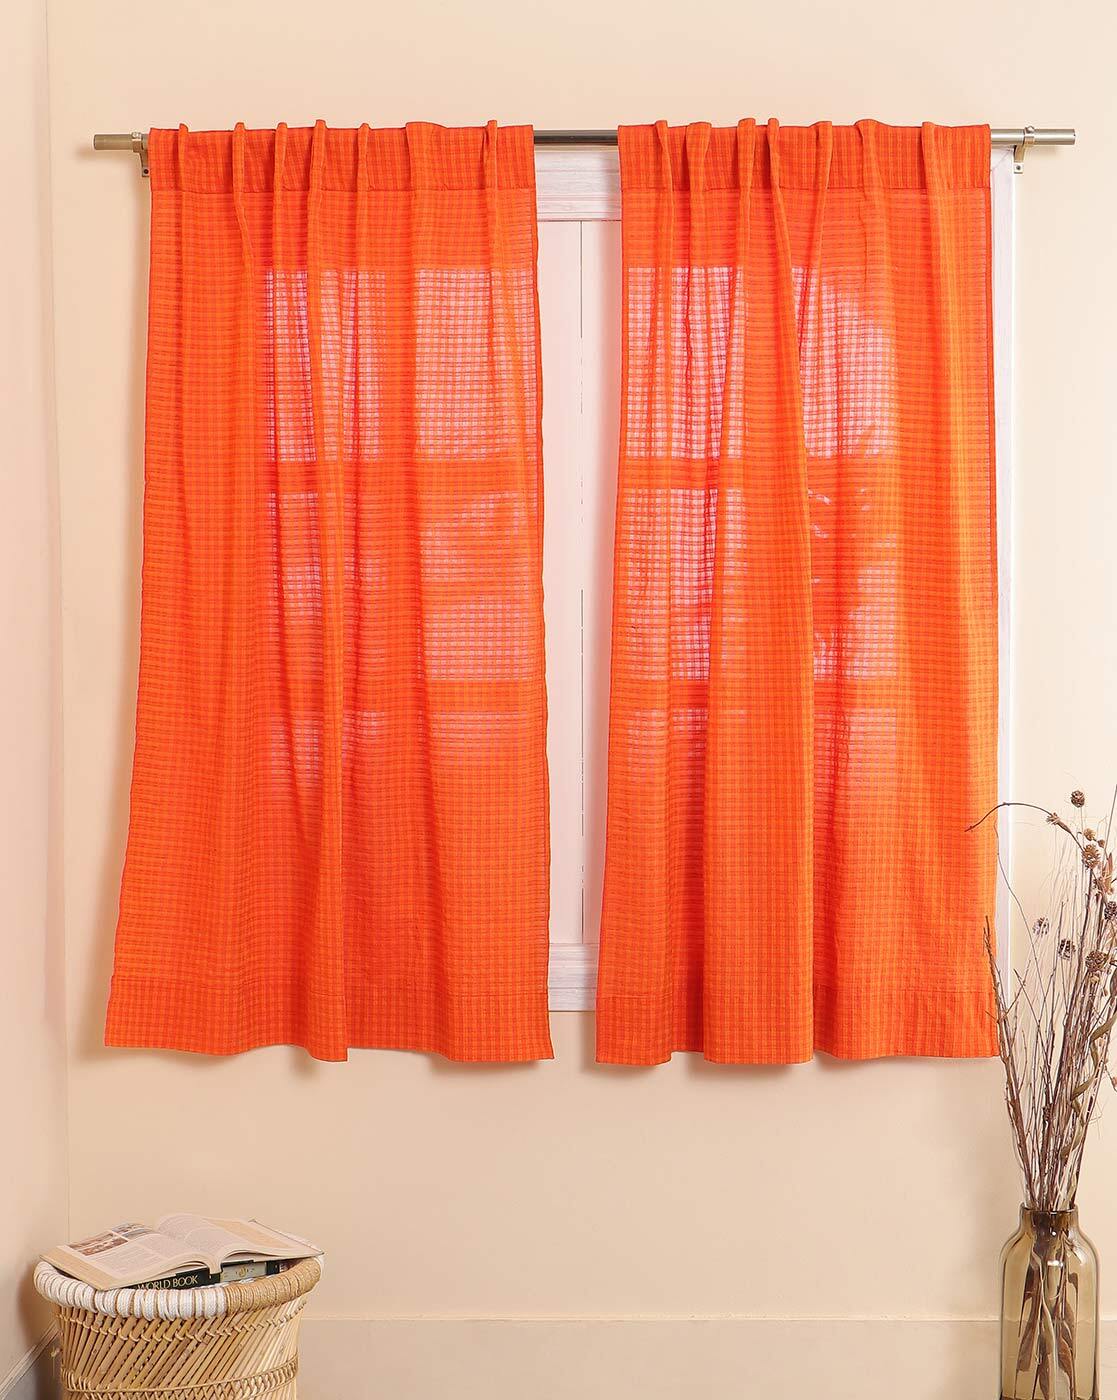 Buy Orange Curtains Accessories For Home Kitchen By Indie Picks Online Ajiocom